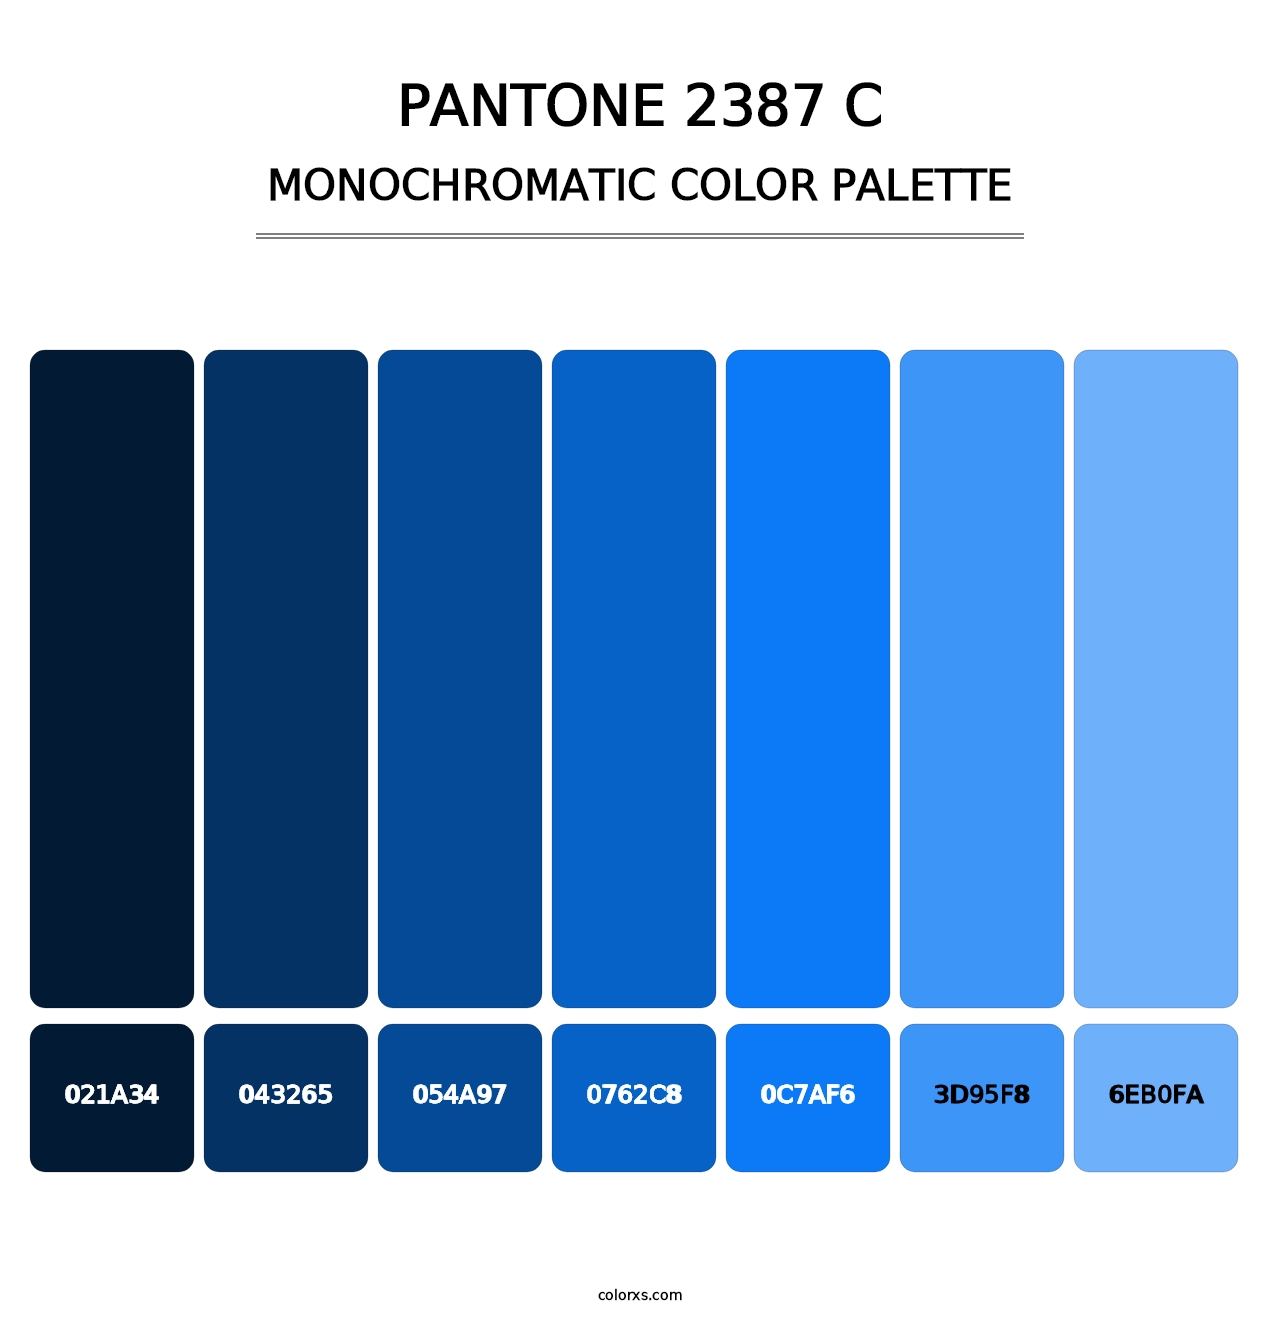 PANTONE 2387 C - Monochromatic Color Palette